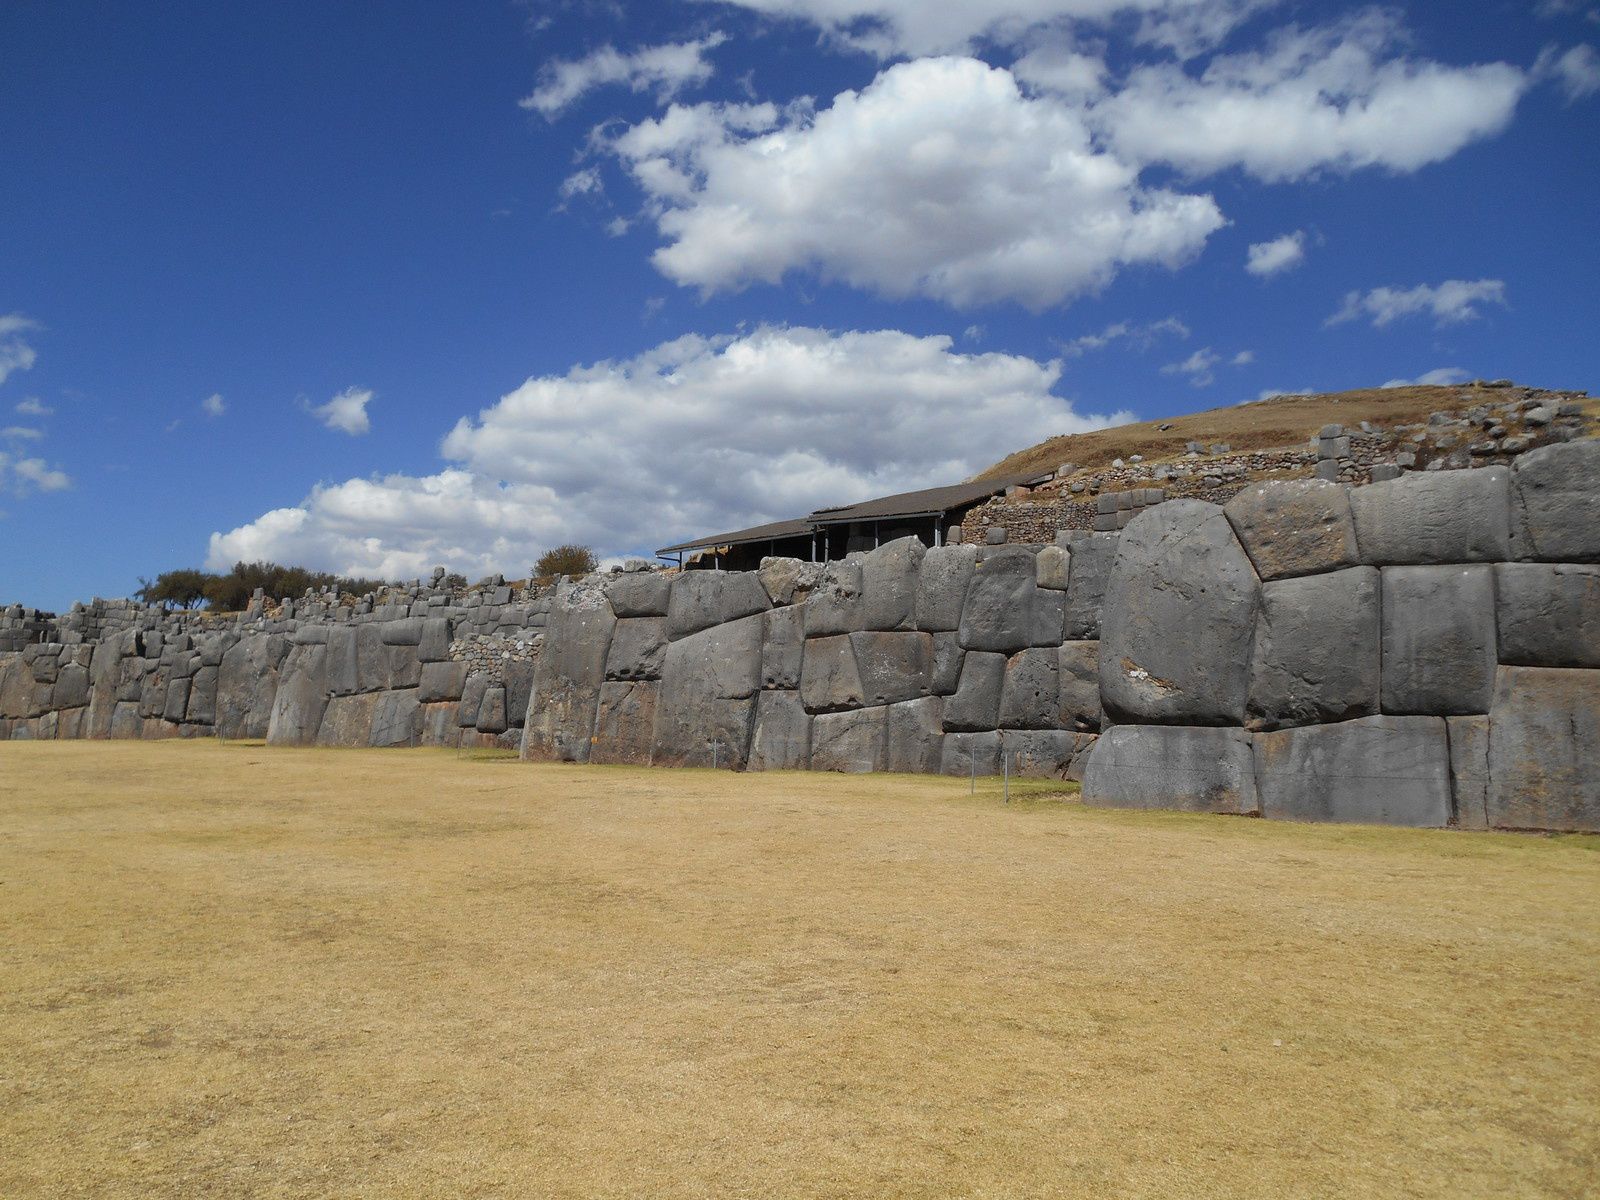 Le site et ses énormes murailles de blocs de granit. Certains pèsent parfois plus de cent tonnes!